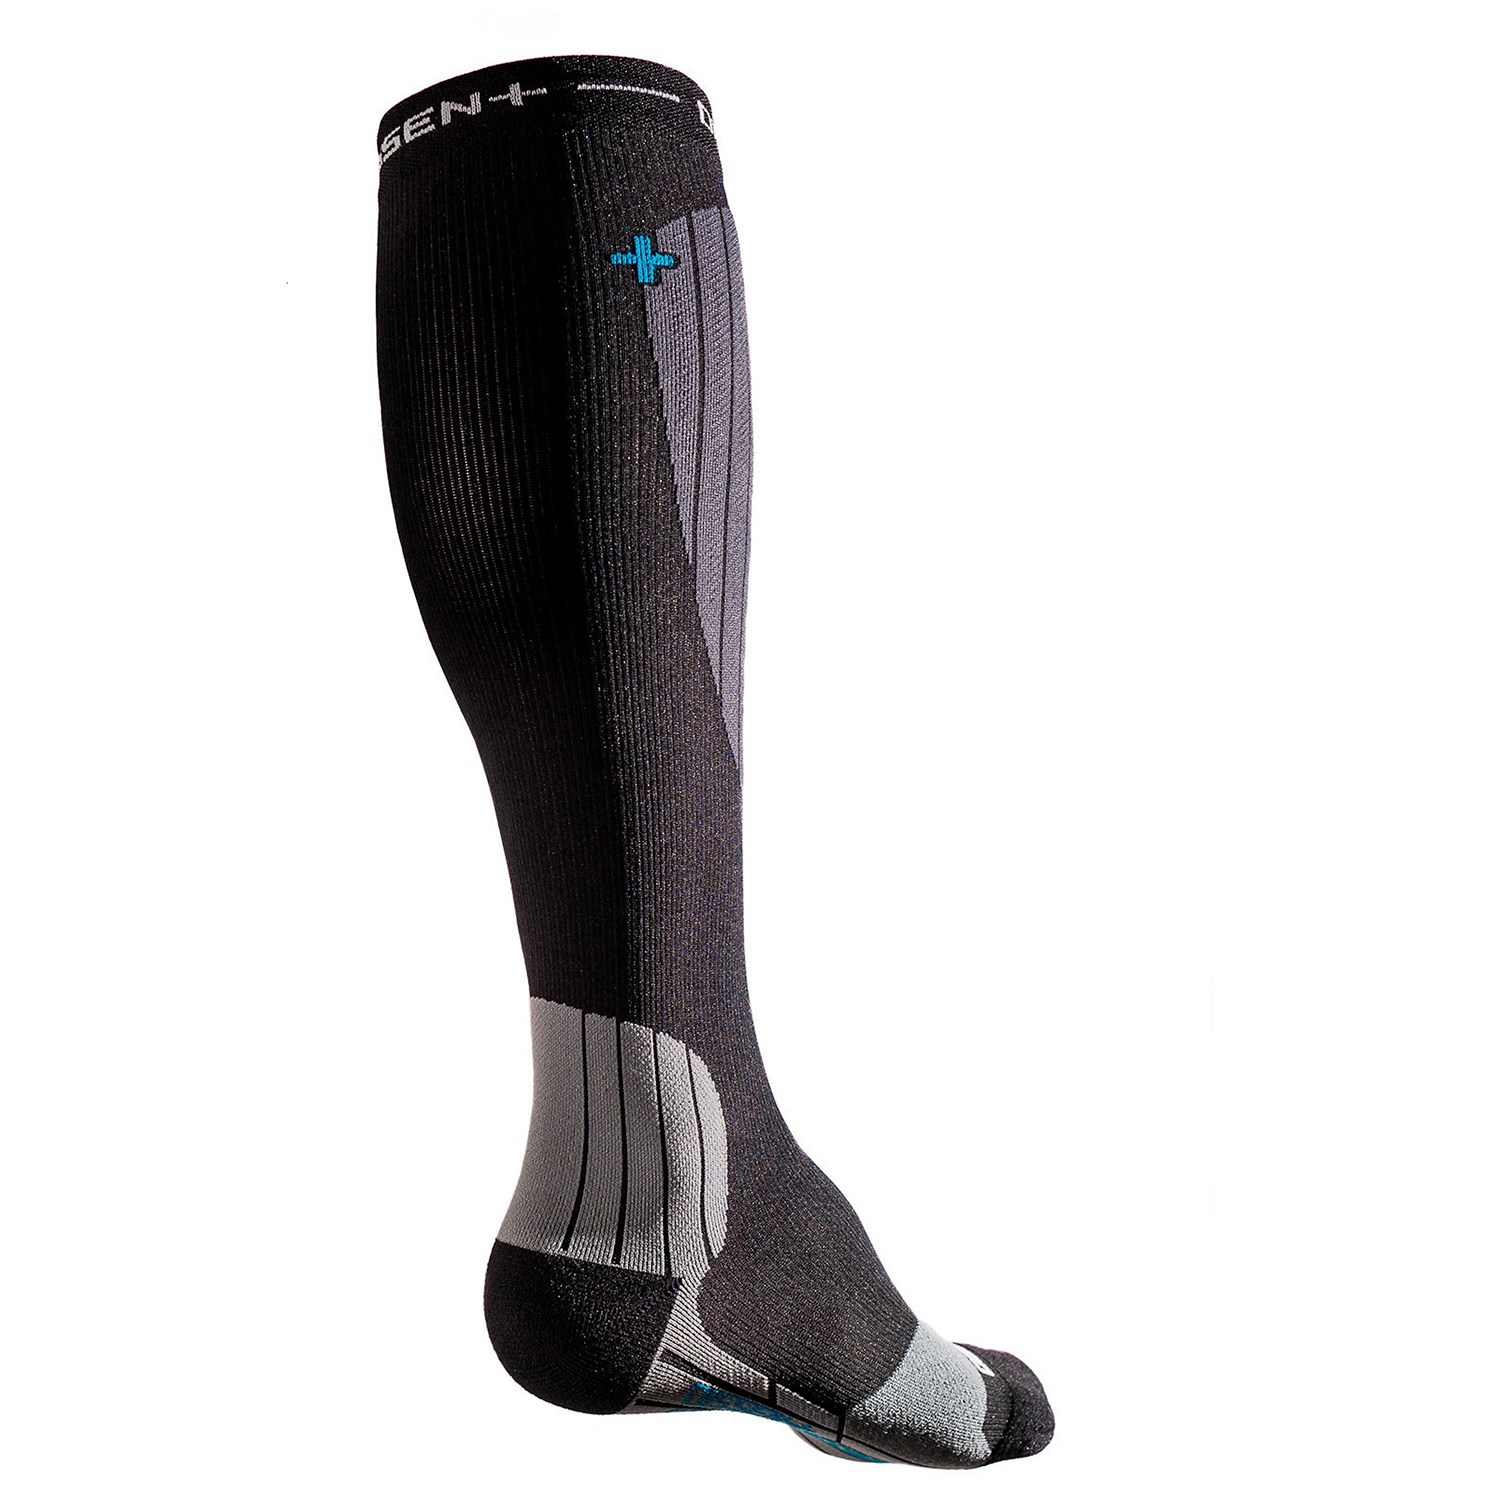 Носки компрессионные Dissent Snow GFX, черный фабричные компрессионные носки компрессионные носки оптовая продажа компрессионные носки компрессионные носки